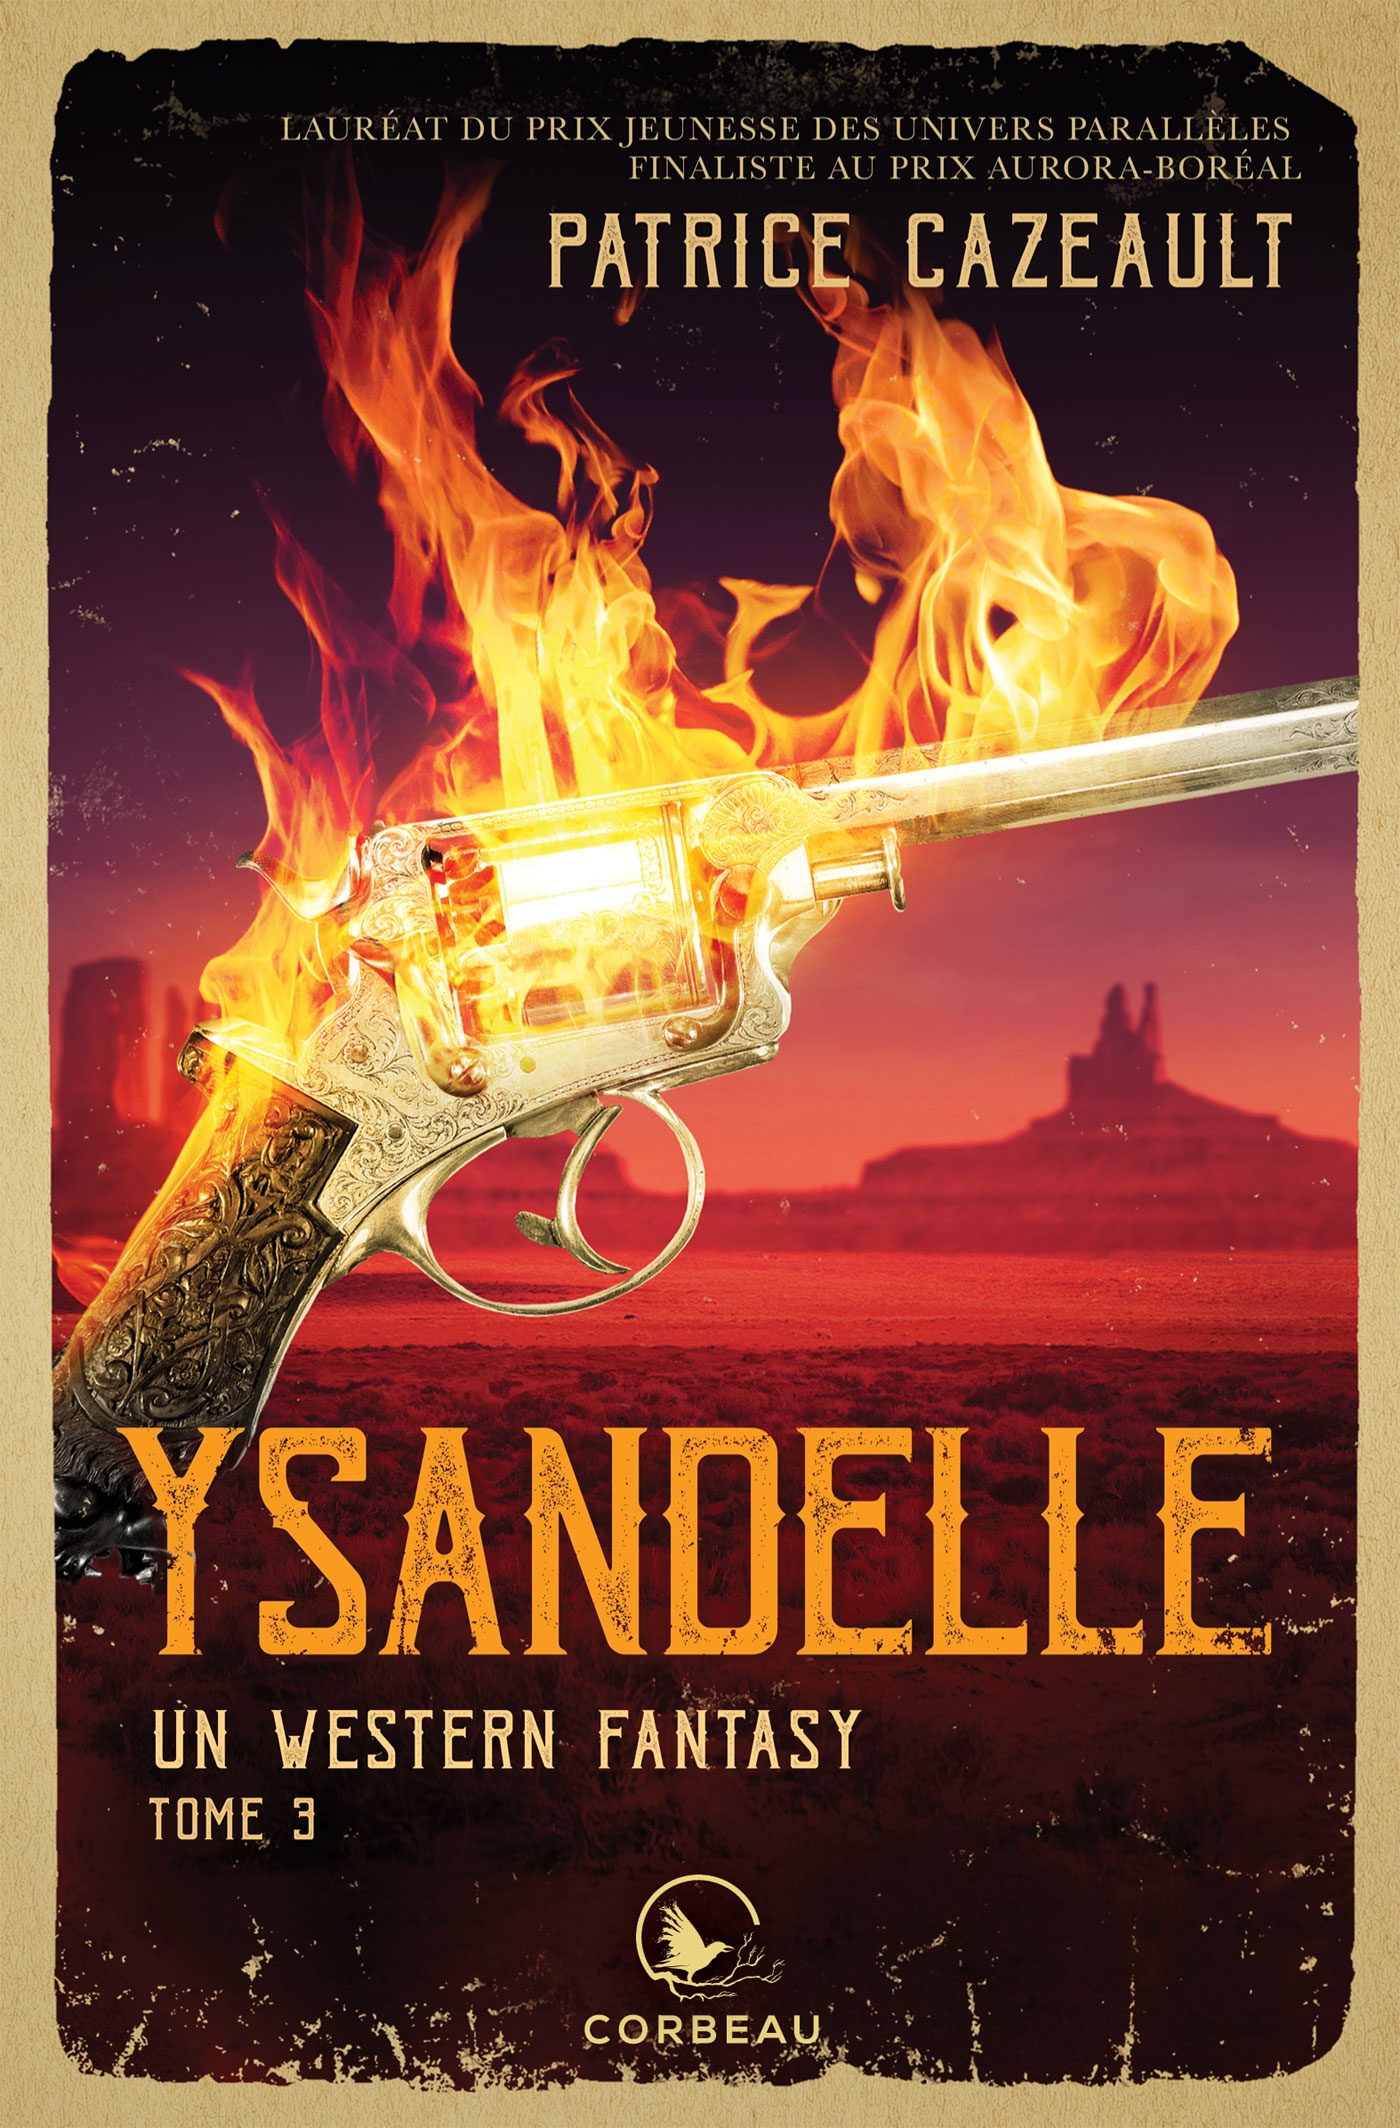 Un western fantasy - Ysandelle